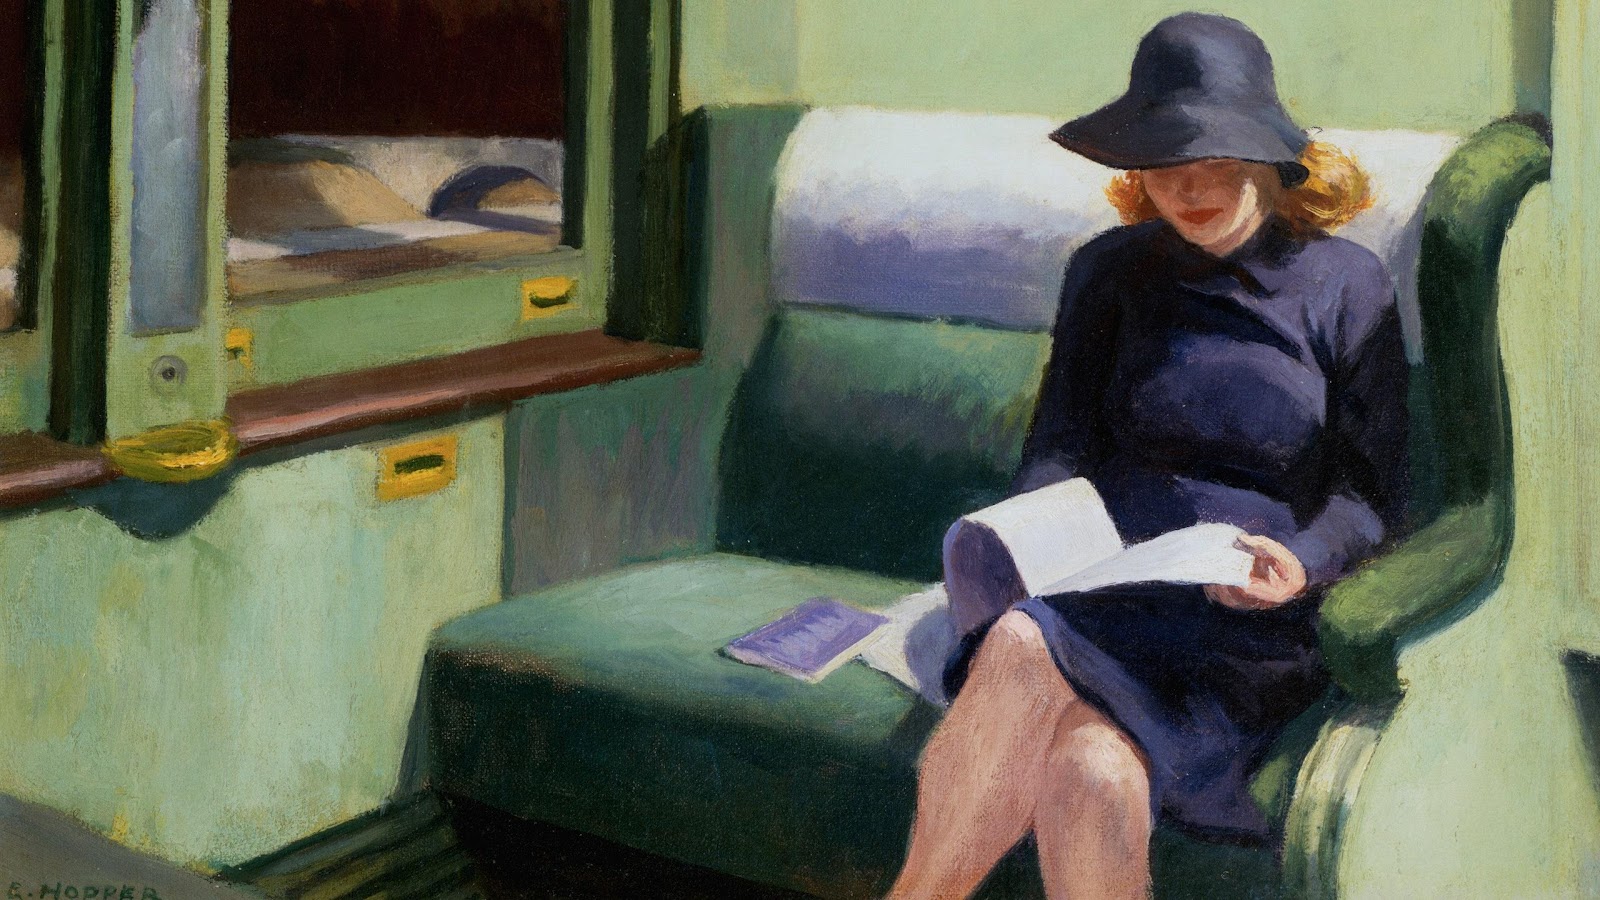 Cuadros de trenes: un viaje sobre raíles con Magritte, Monet, Turner y Hopper | Traveler